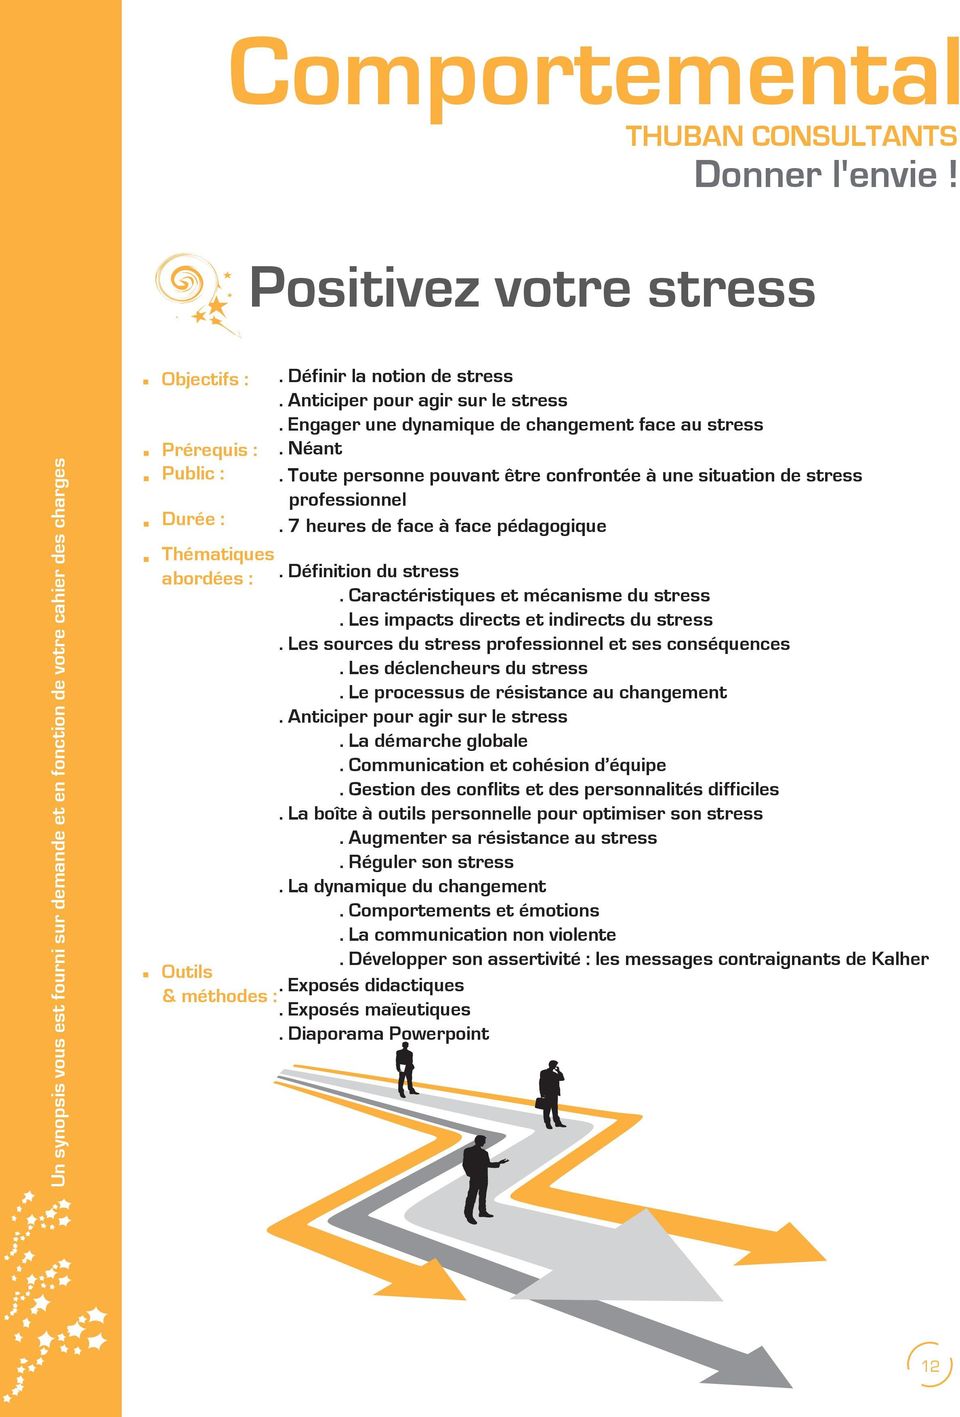 Les impacts directs et indirects du stress. Les sources du stress professionnel et ses conséquences. Les déclencheurs du stress. Le processus de résistance au changement.